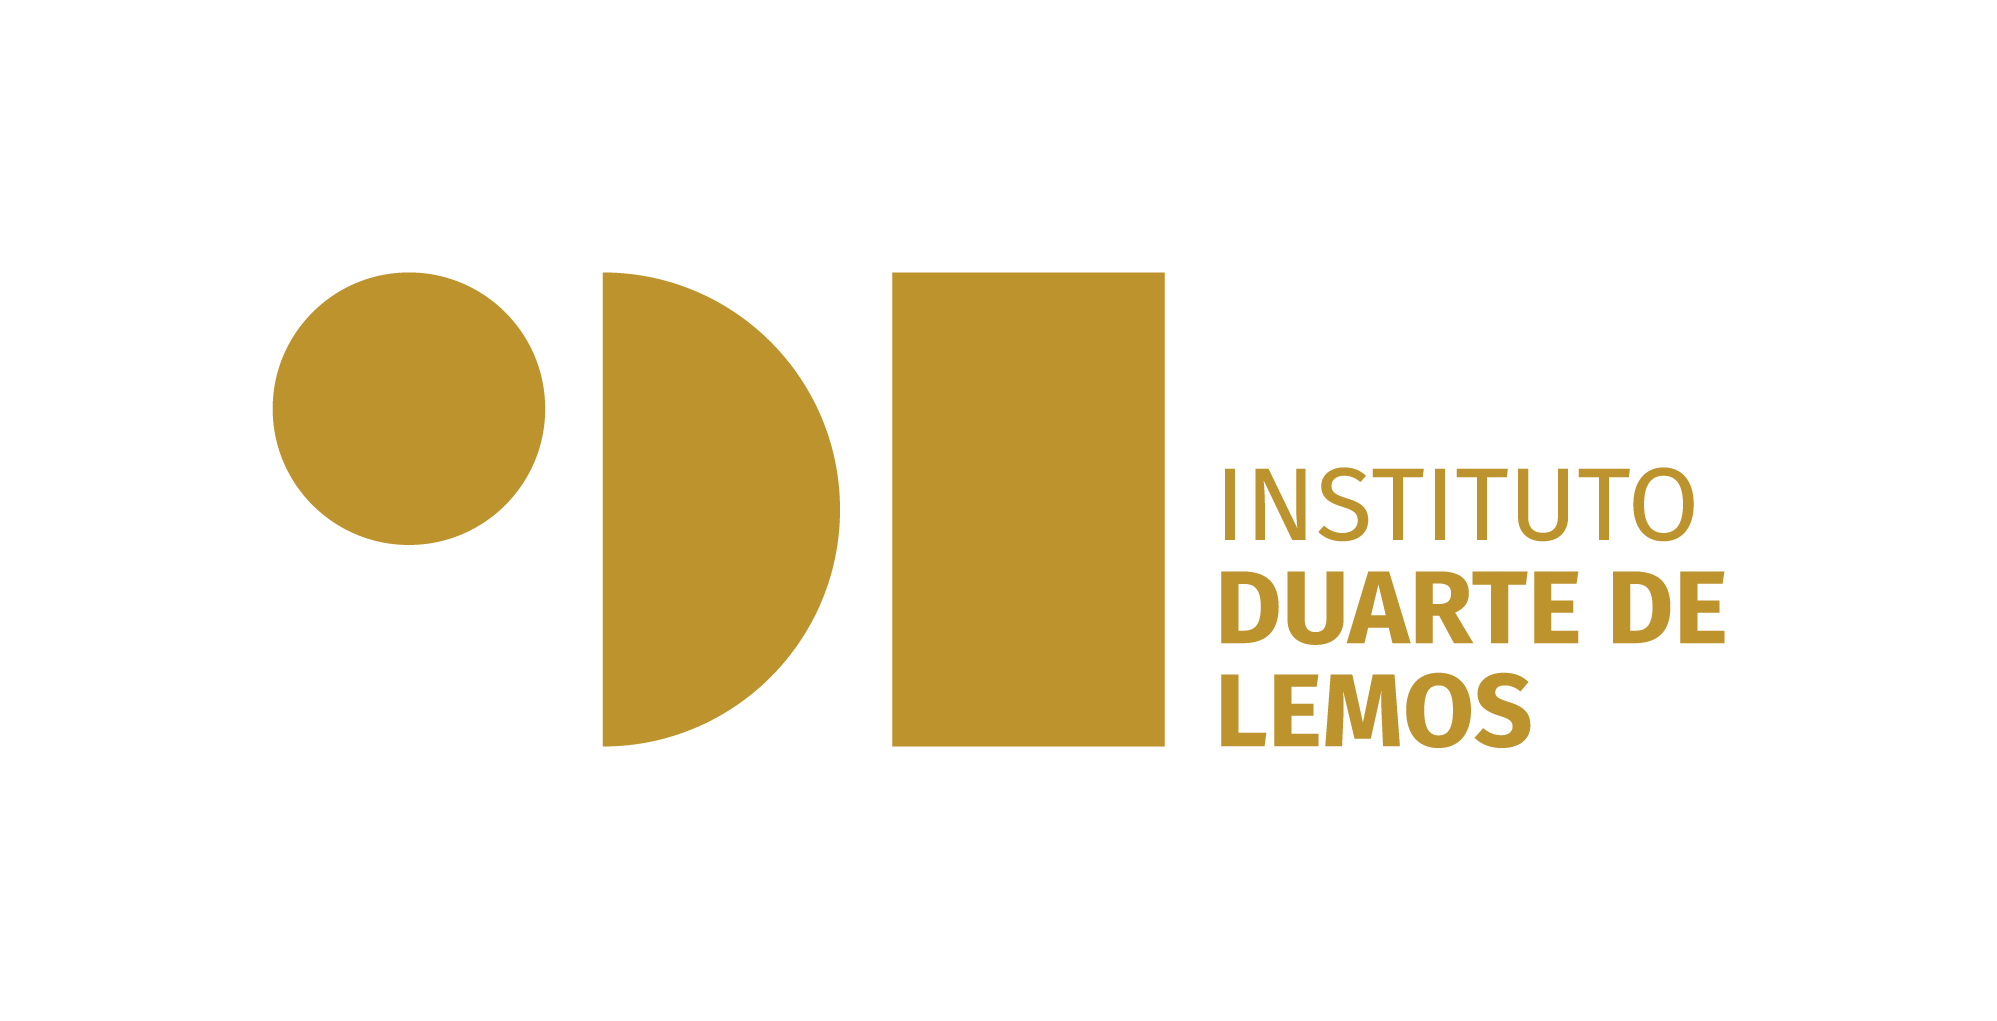 Instituto Duarte de Lemos